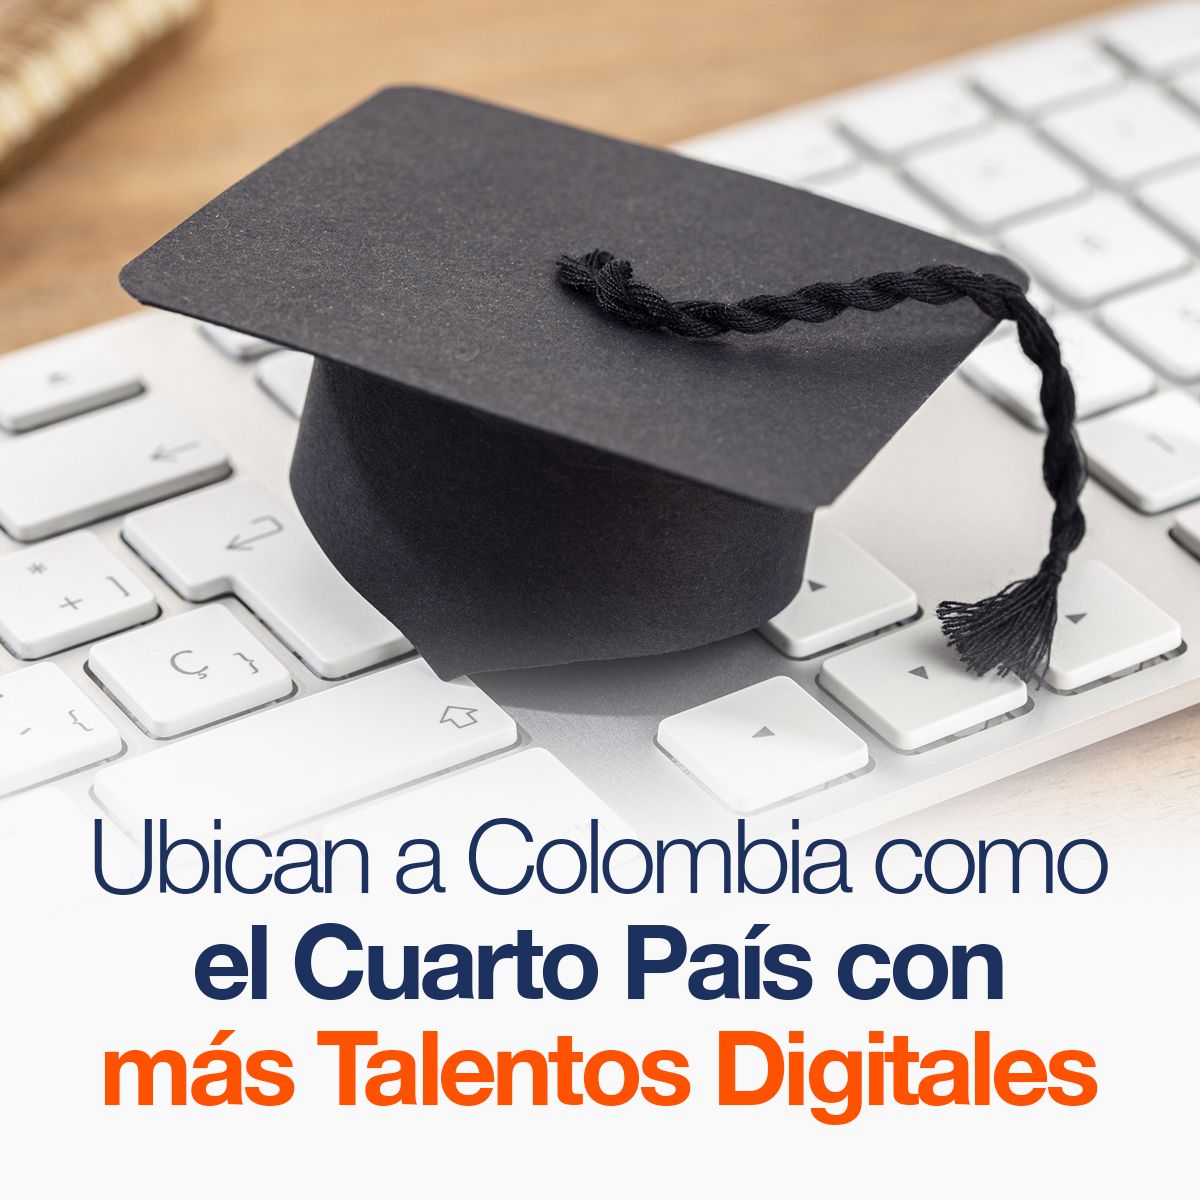 Ubican a Colombia como el Cuarto País con más Talentos Digitales